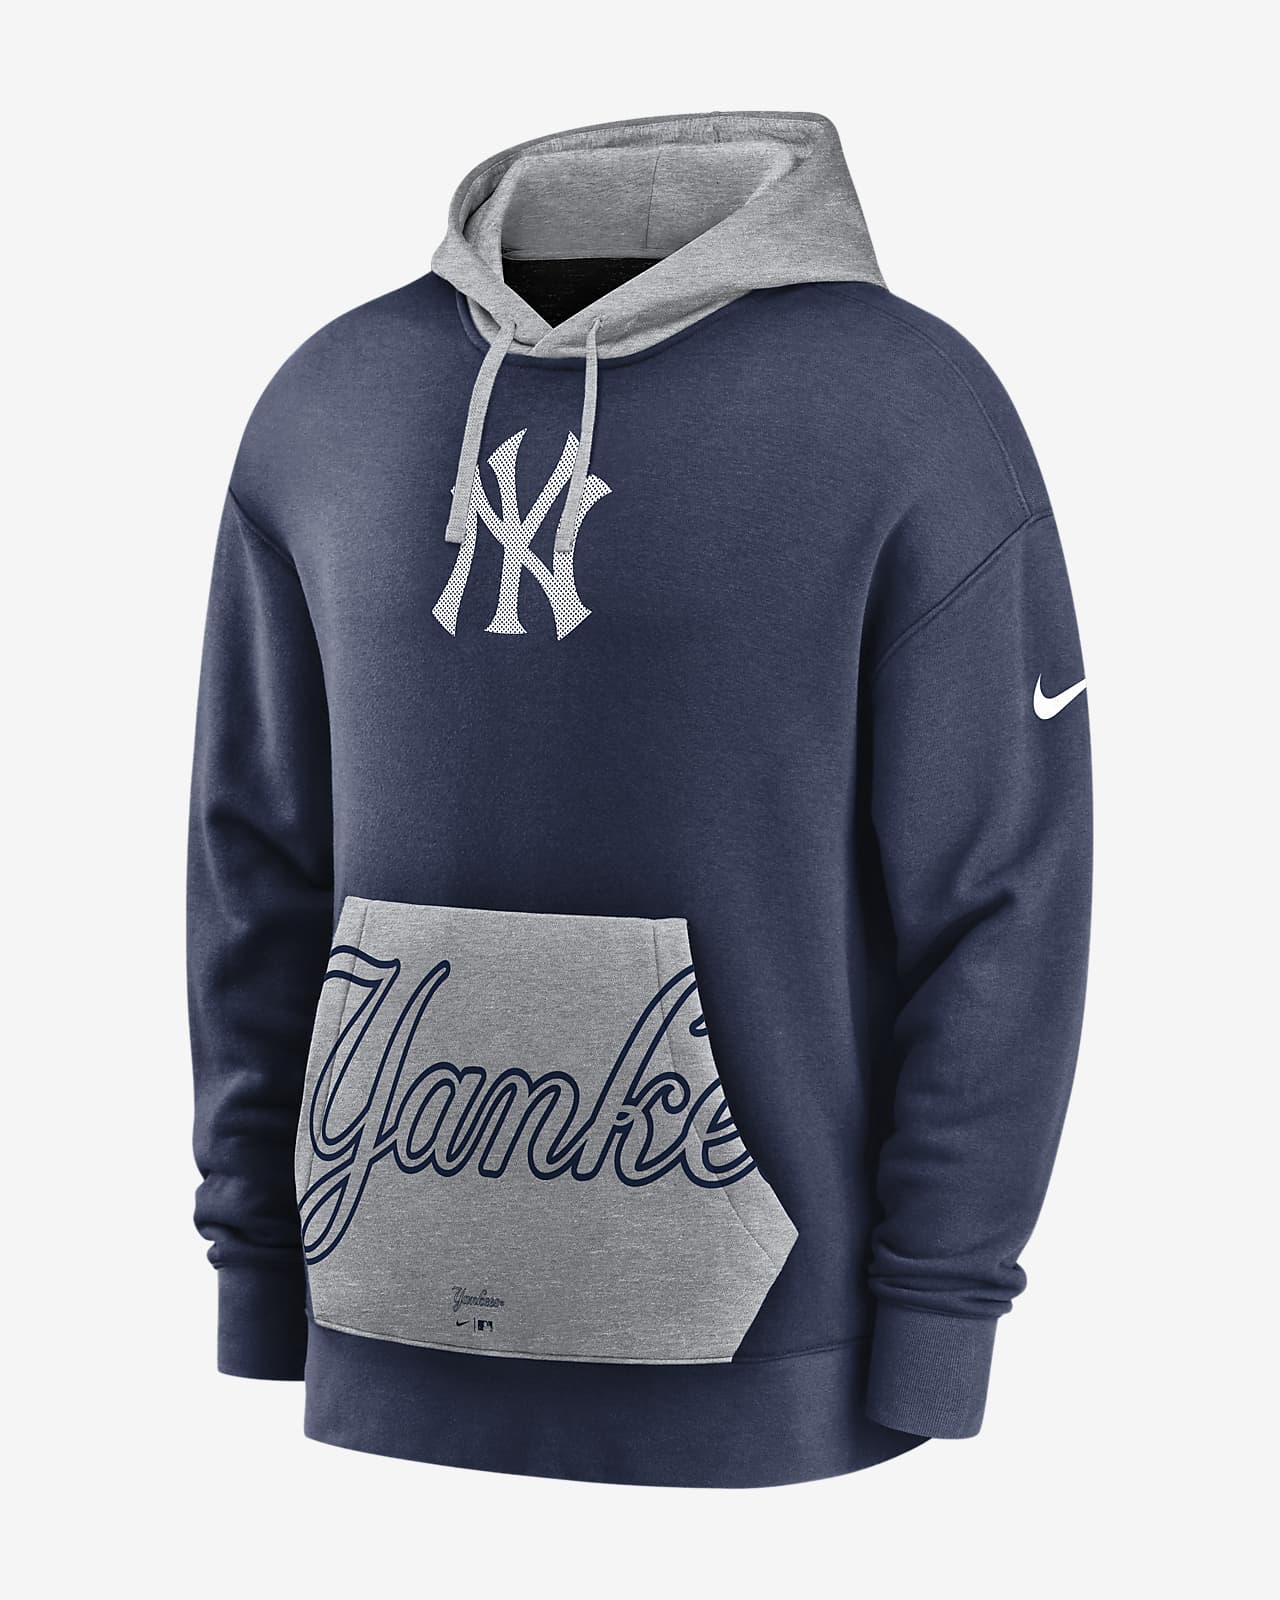 nike new york hoodie